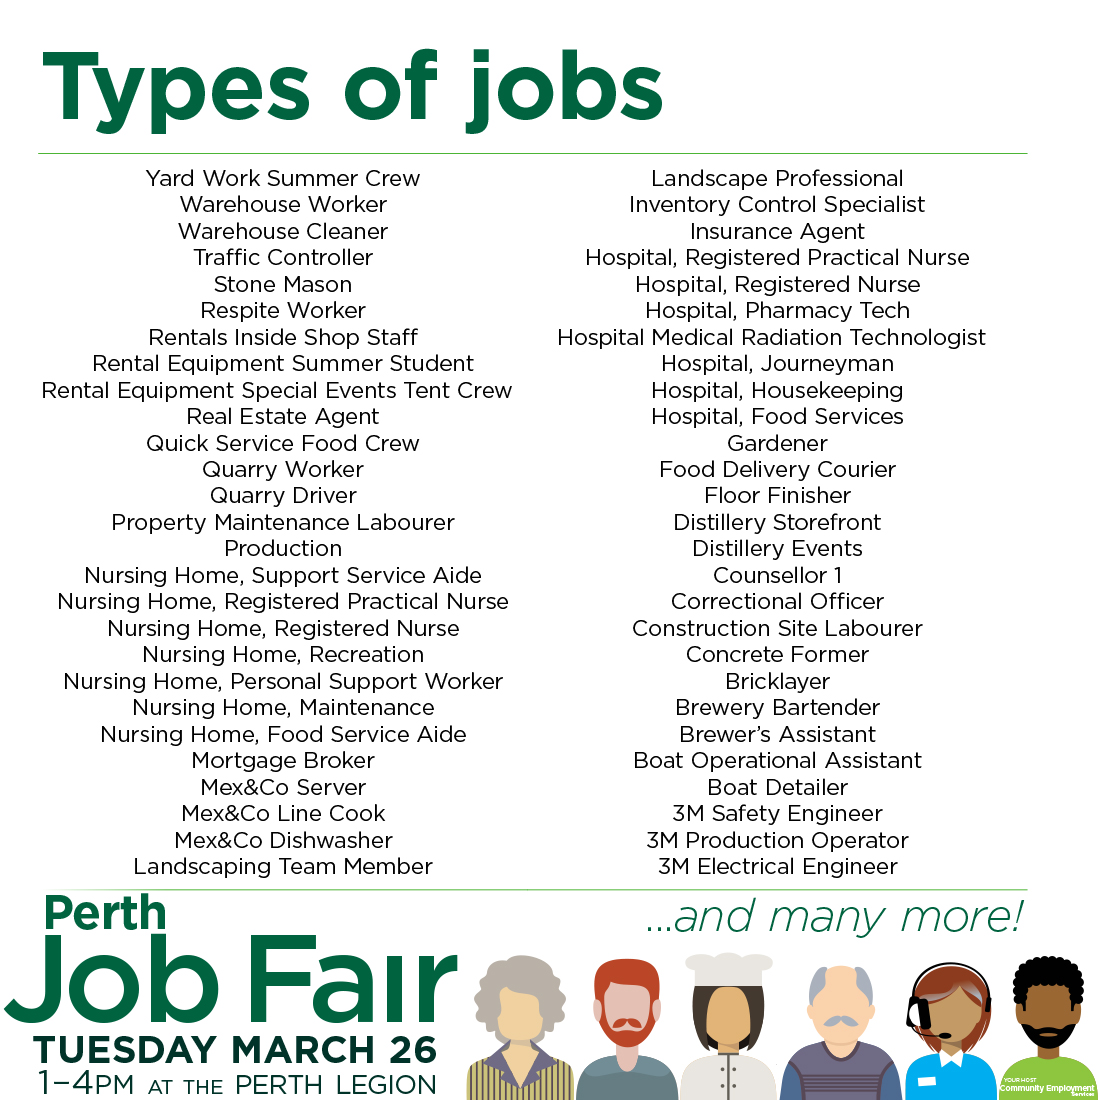 Perth Job Fair - Tuesday March 26th 024 - 1:00pm-4:00pm